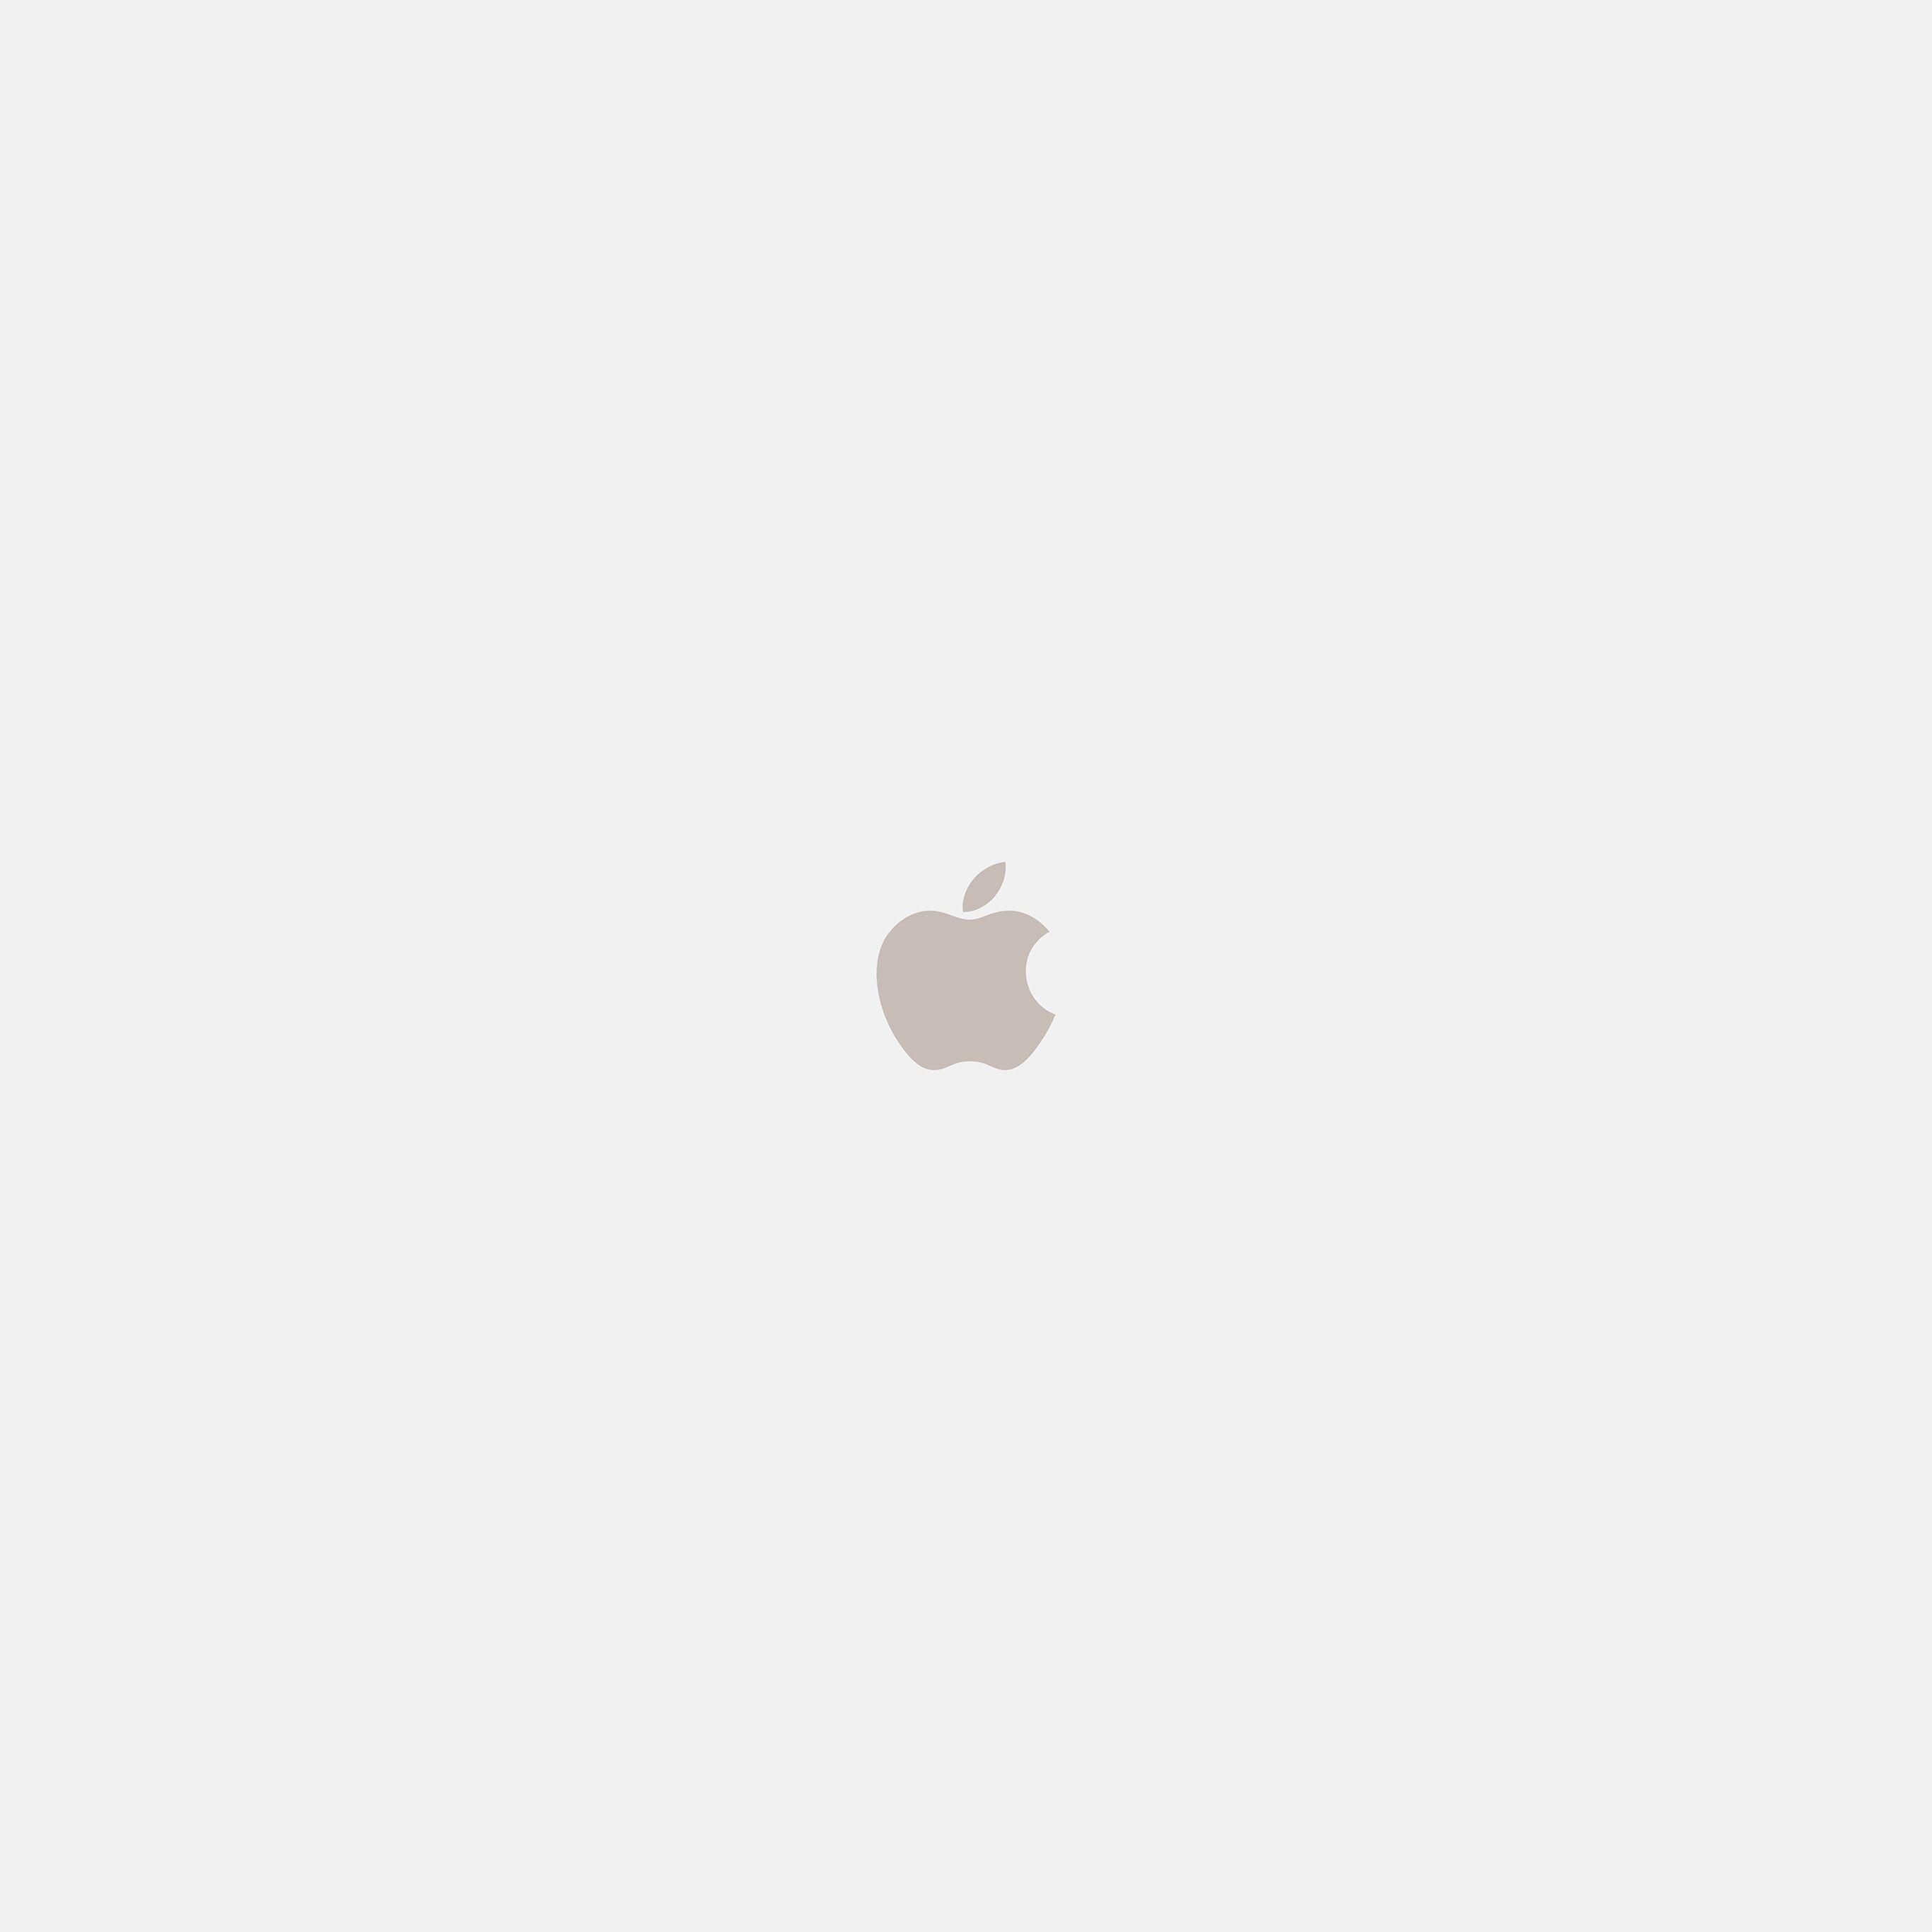 White Apple Logo - I Love Papers | as69-iphone7-apple-logo-white-gold-art-illustration